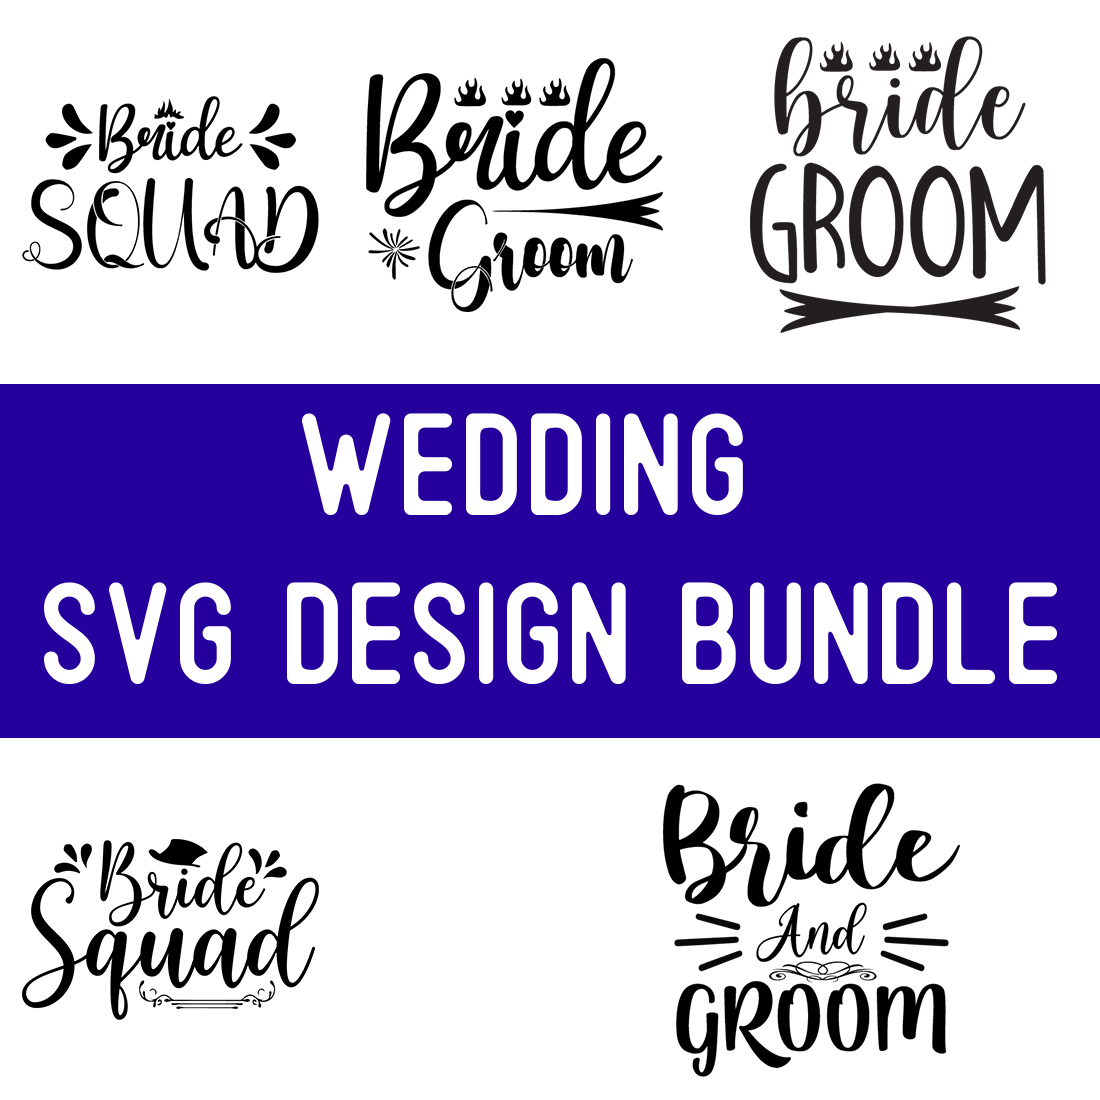 wedding SVG Design Bundle preview image.